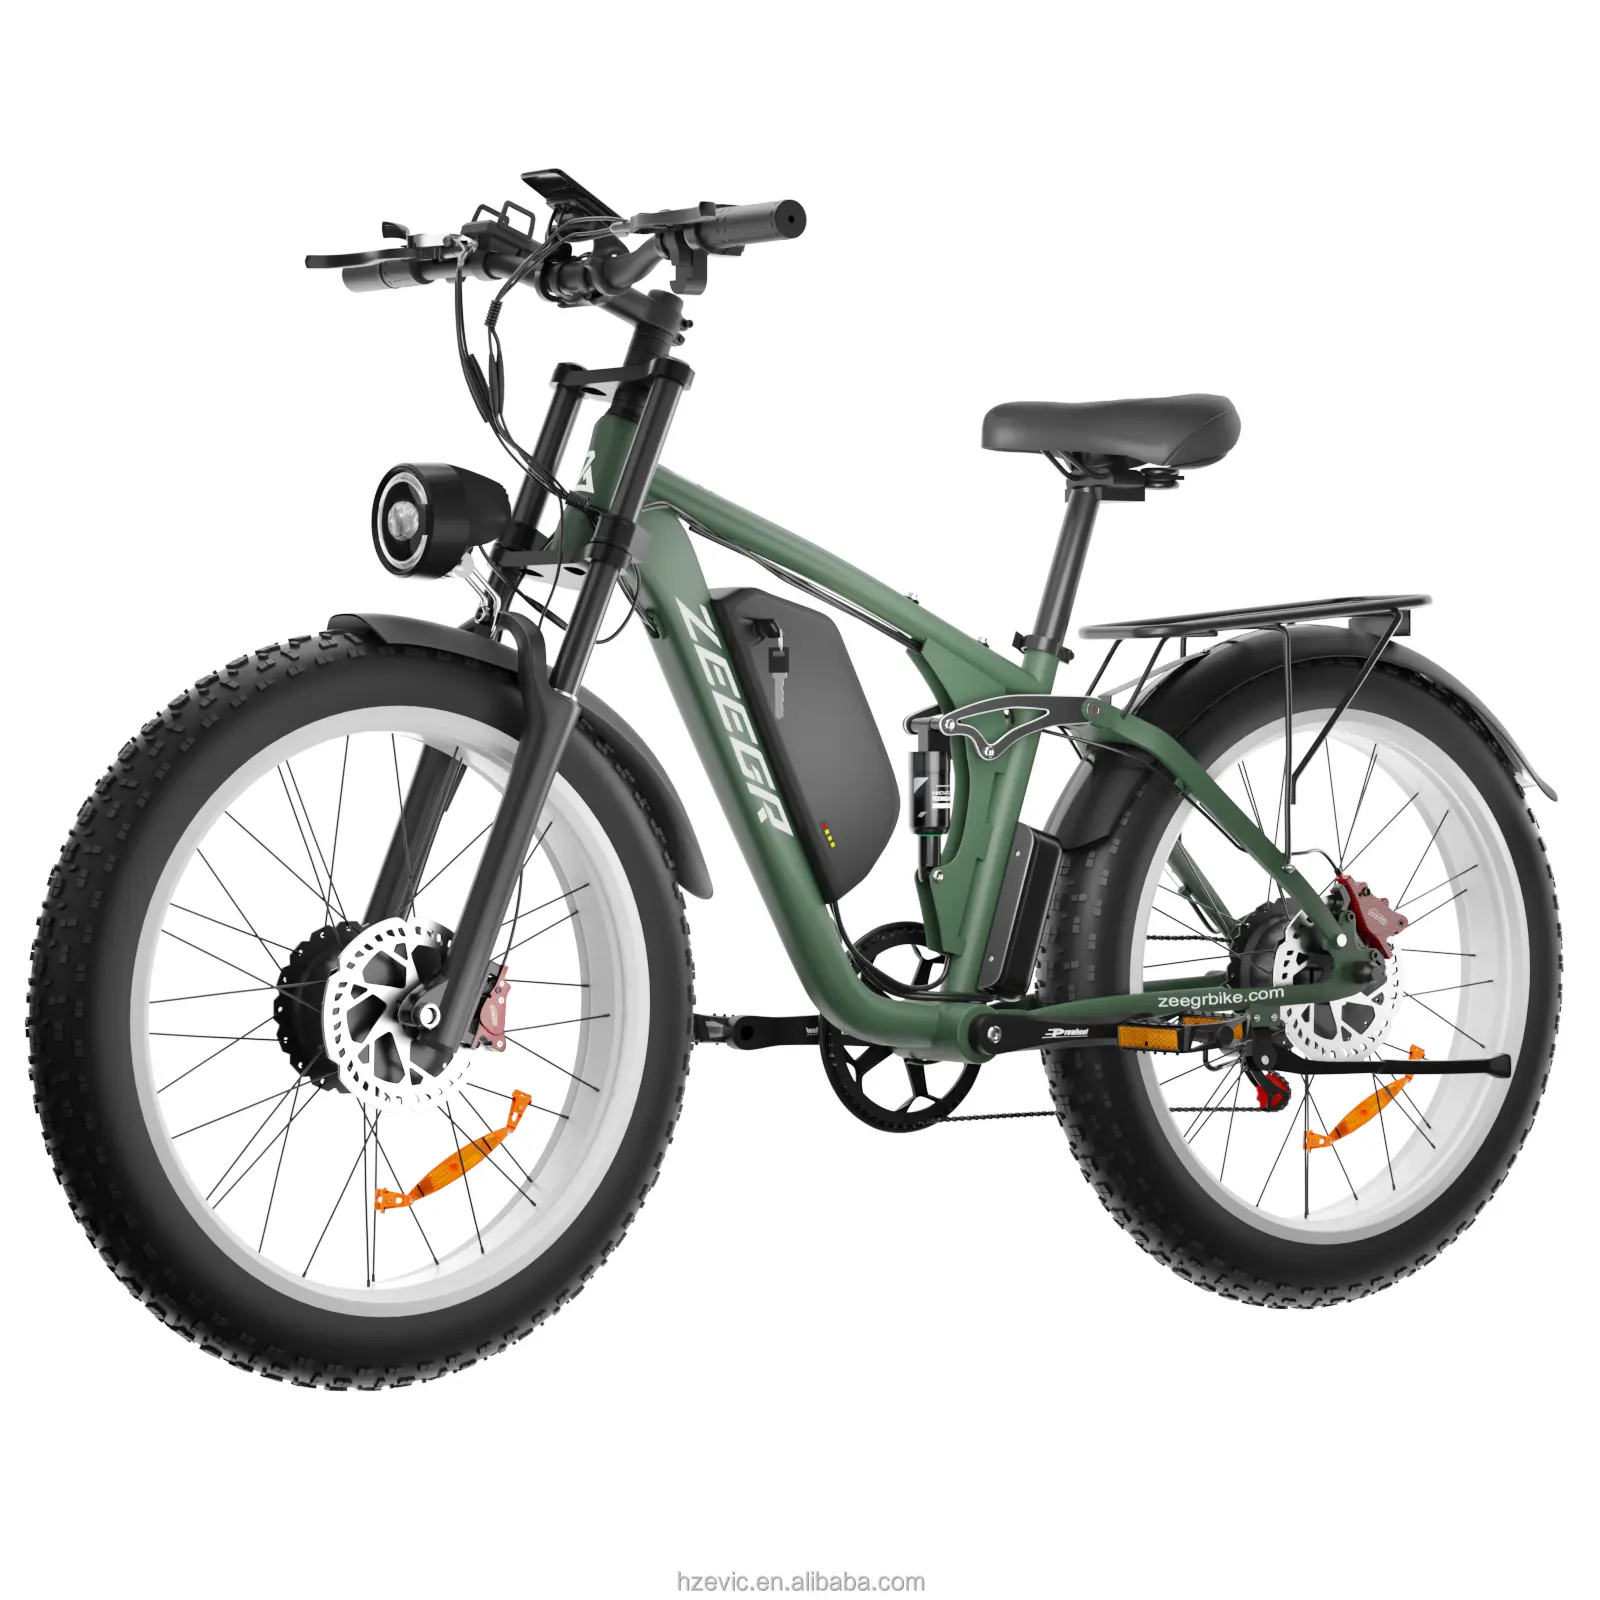 미국 창고 재고 고속 전자 자전거 큰 타이어 전기 자전거 ebike 2000w 48v 전자 자전거 52v 전기 먼지 자전거